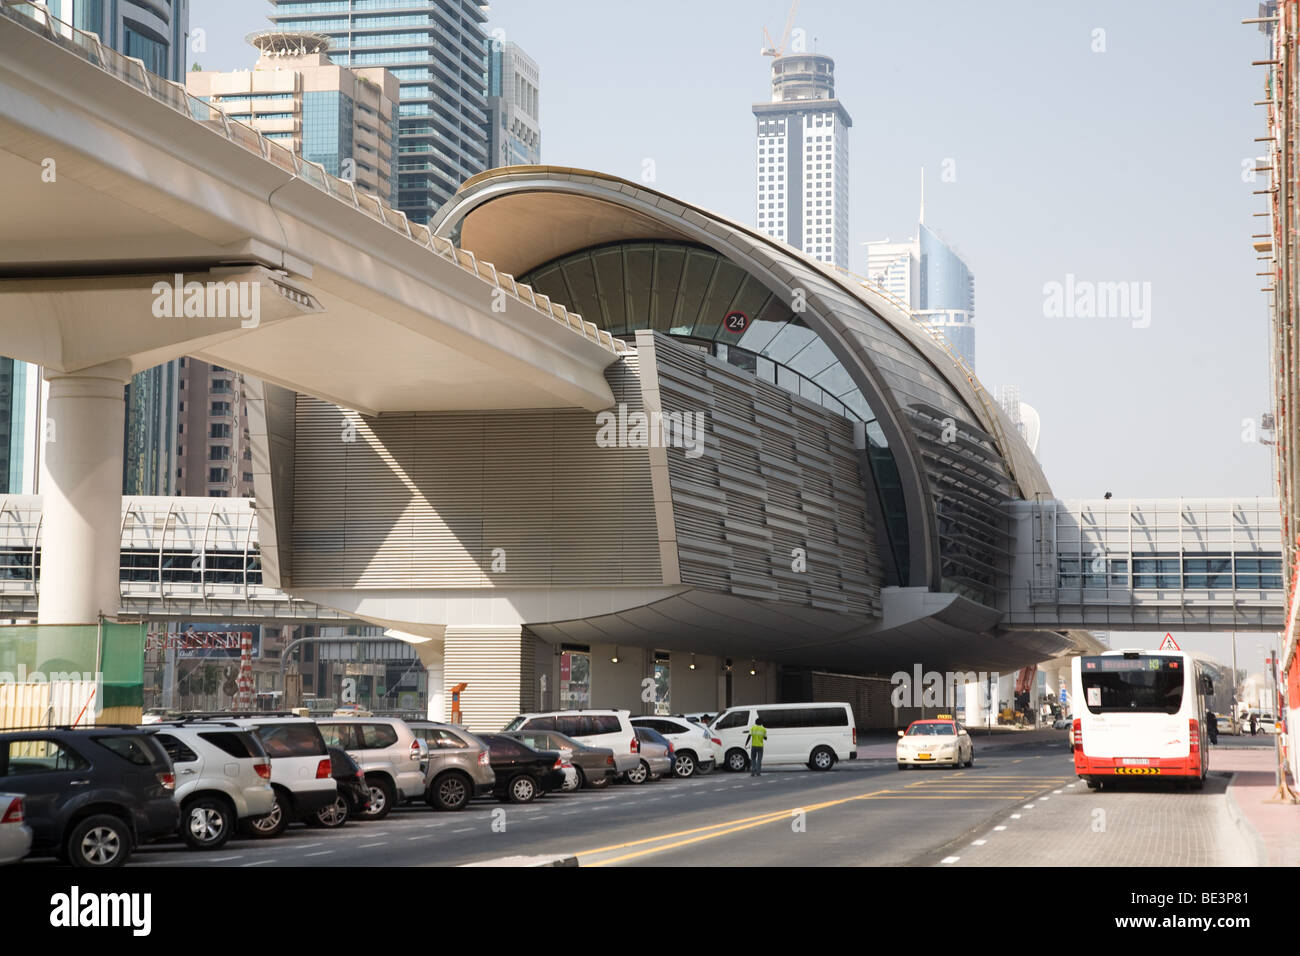 Dubai Metro Railway line financial station exterior Stock Photo